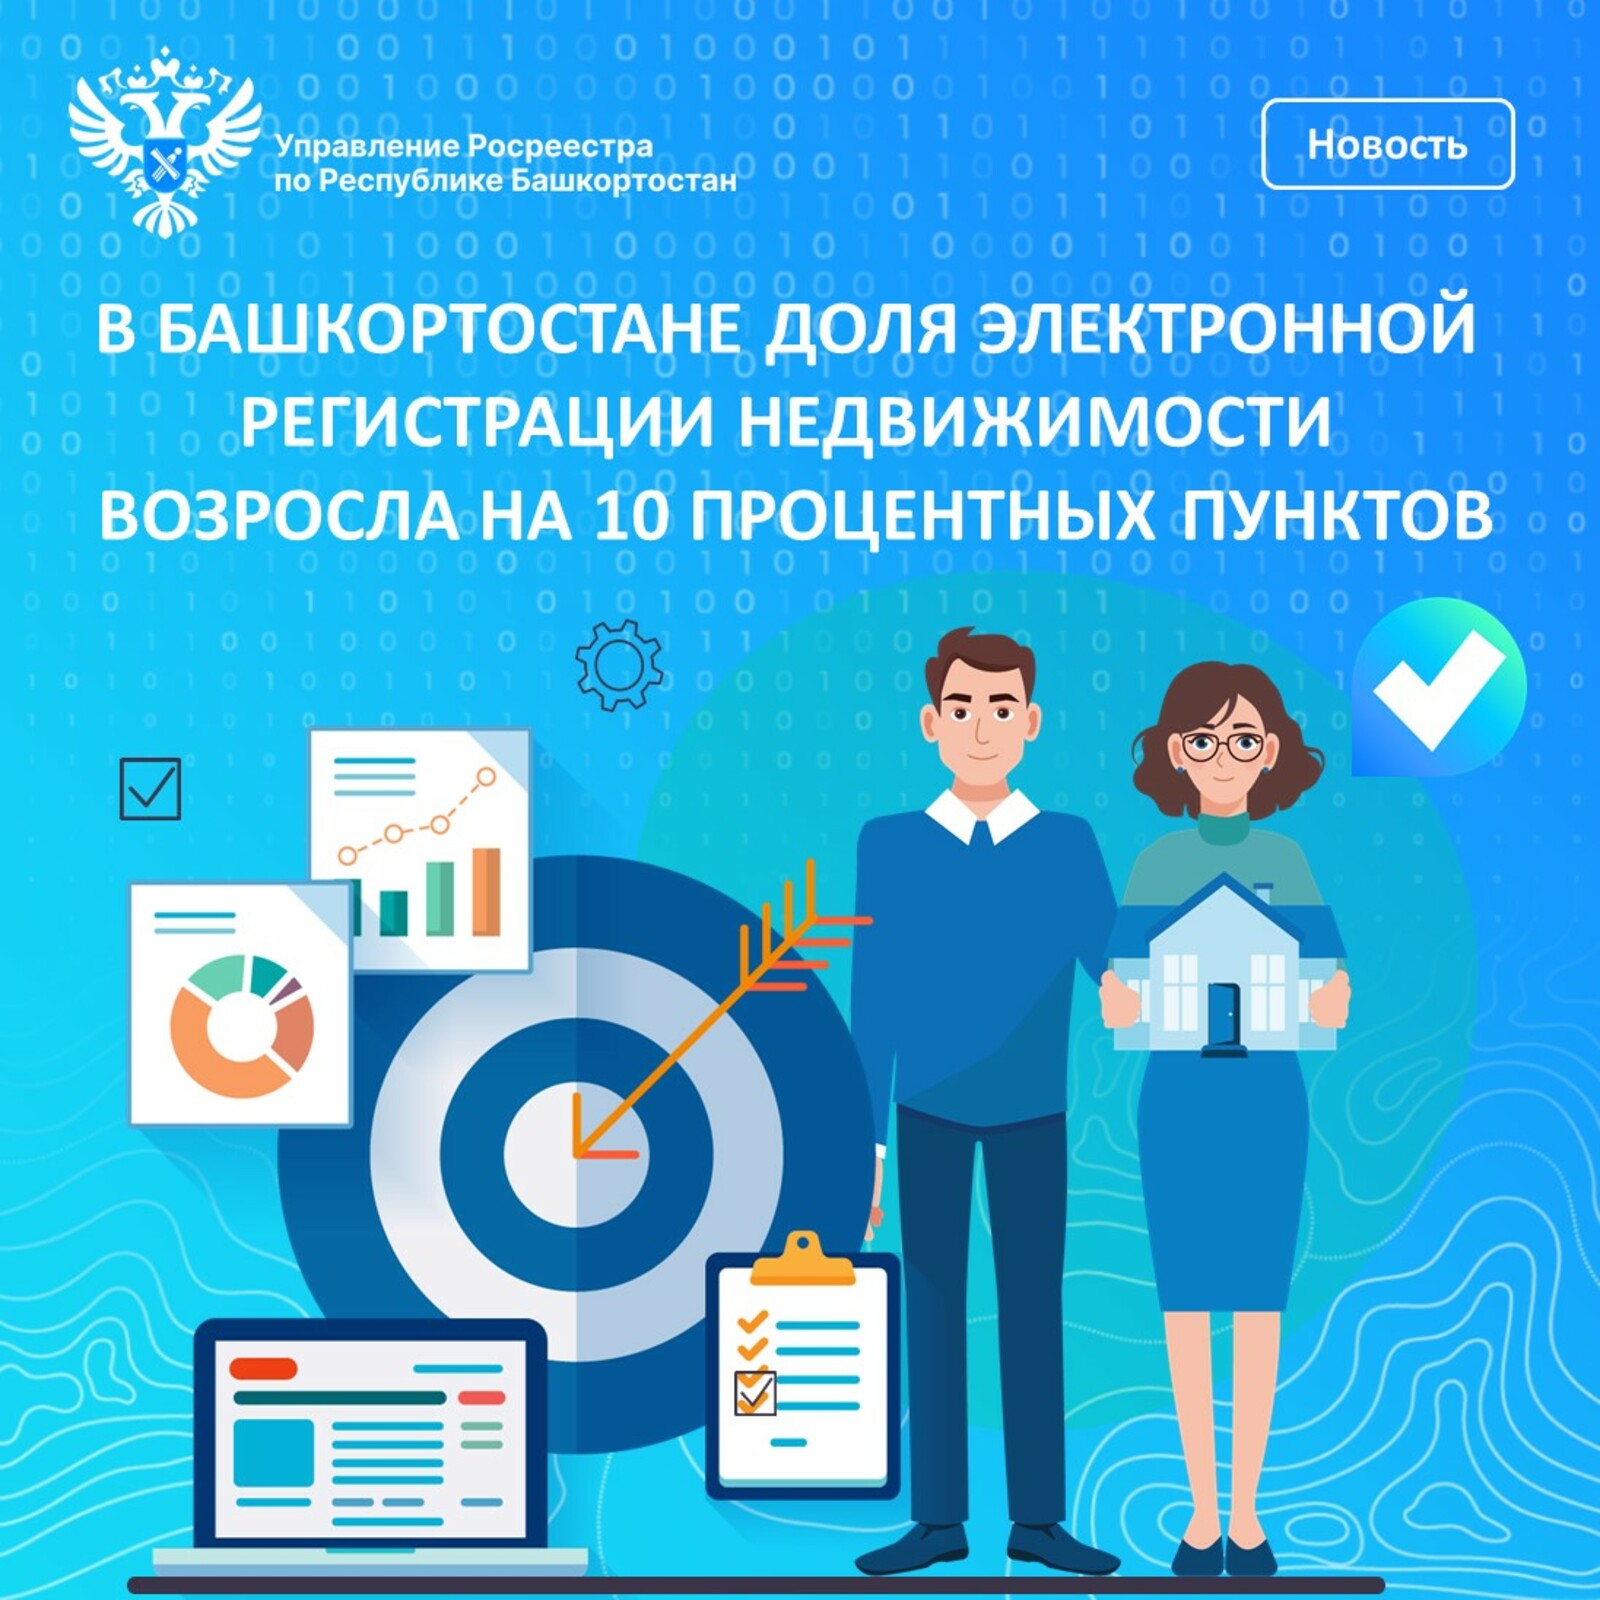 В Башкортостане доля электронной регистрации недвижимости возросла на 10 процентных пунктов